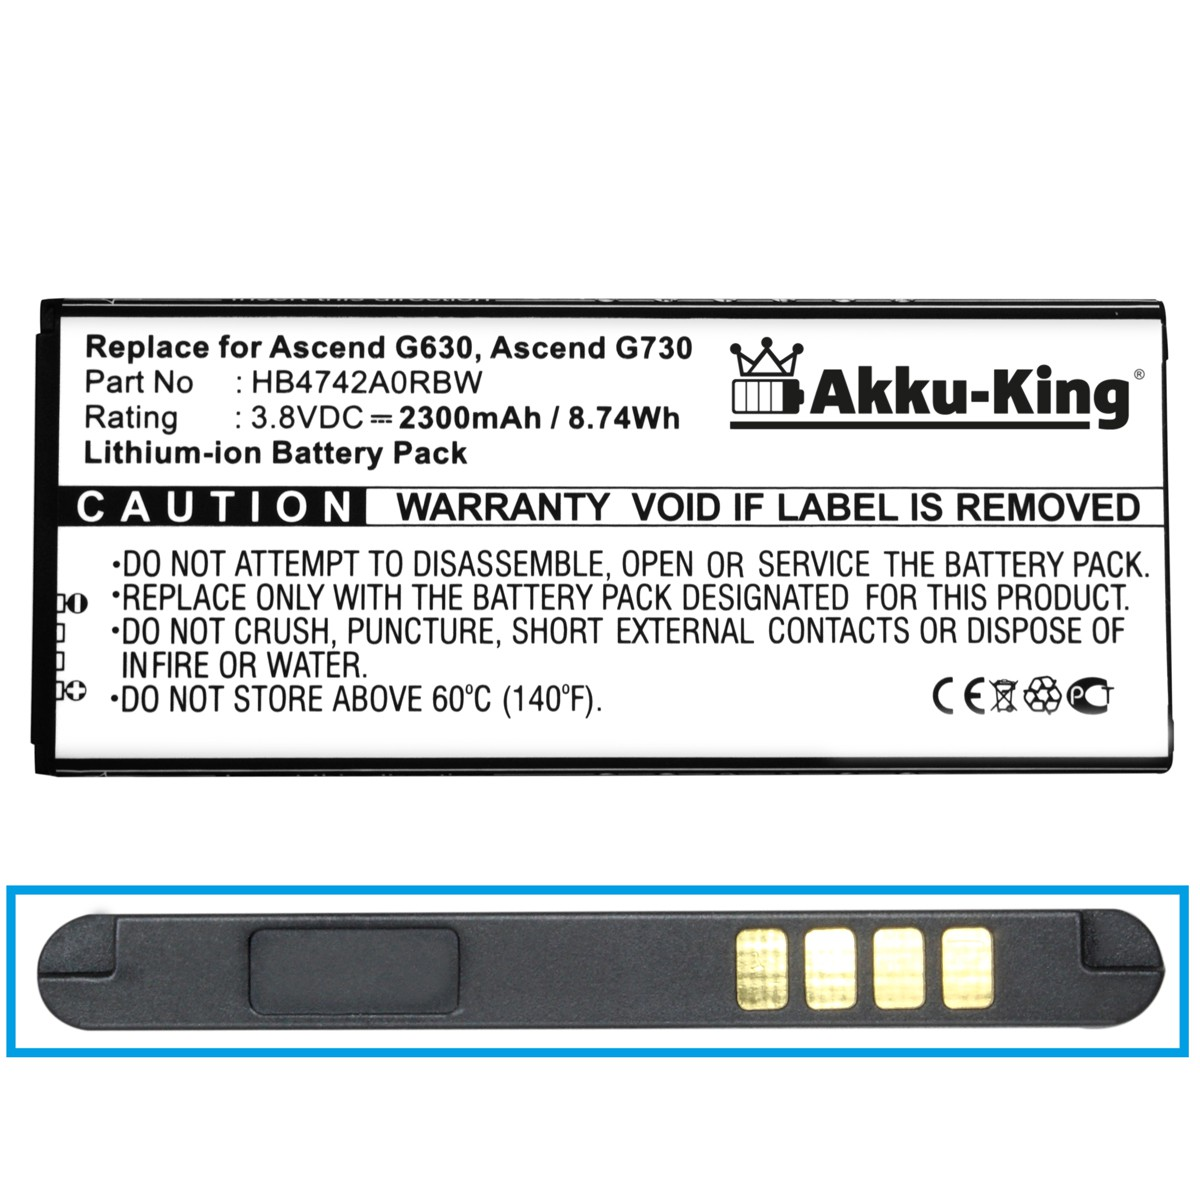 HB4742A0RBC 2300mAh Huawei Akku Volt, kompatibel mit Handy-Akku, 3.8 AKKU-KING Li-Ion